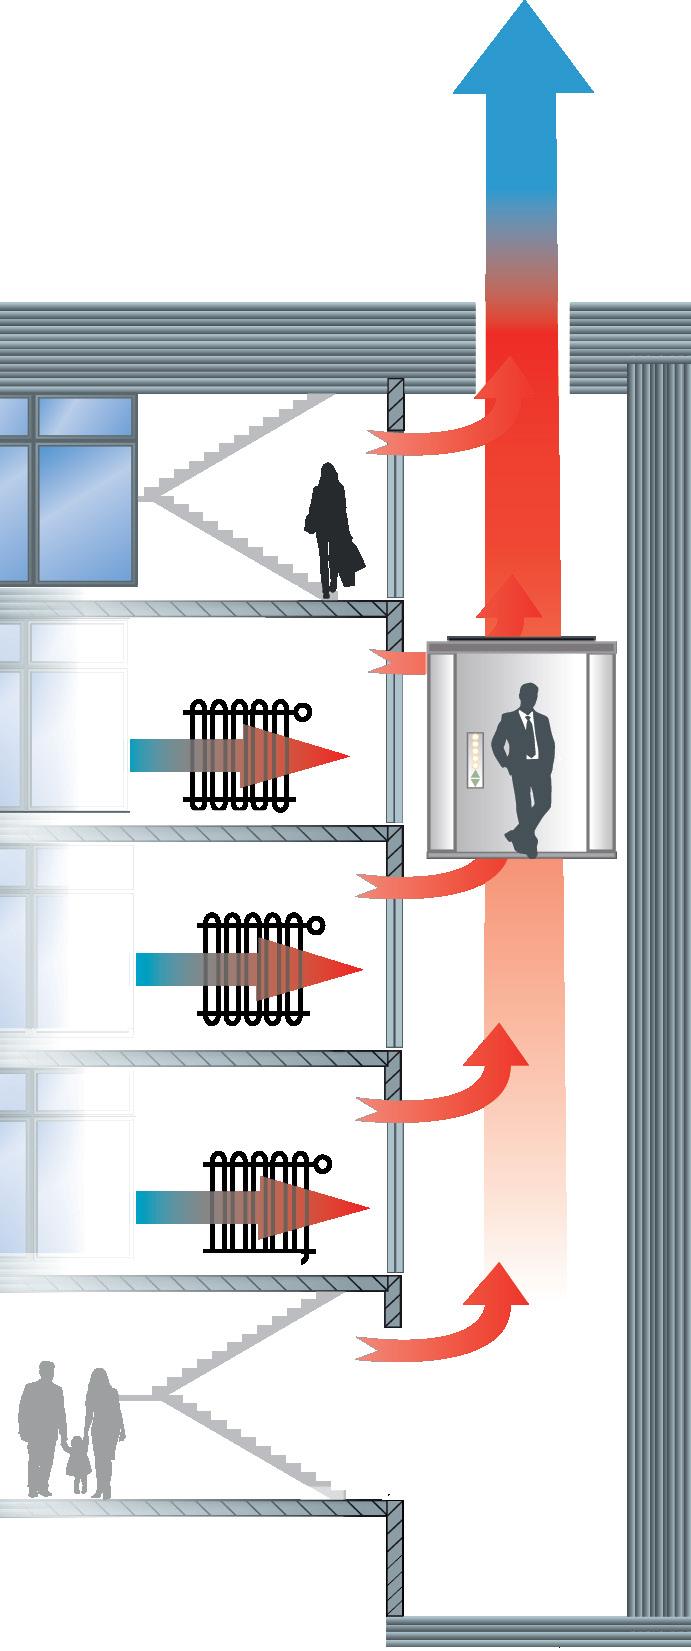 Energieverluste im Aufzugsschacht Sie schließen doch auch Ihre Fenster! Machen Sie es einfach mit Ihren Aufzugsschächten und Maschinenräumen genauso.